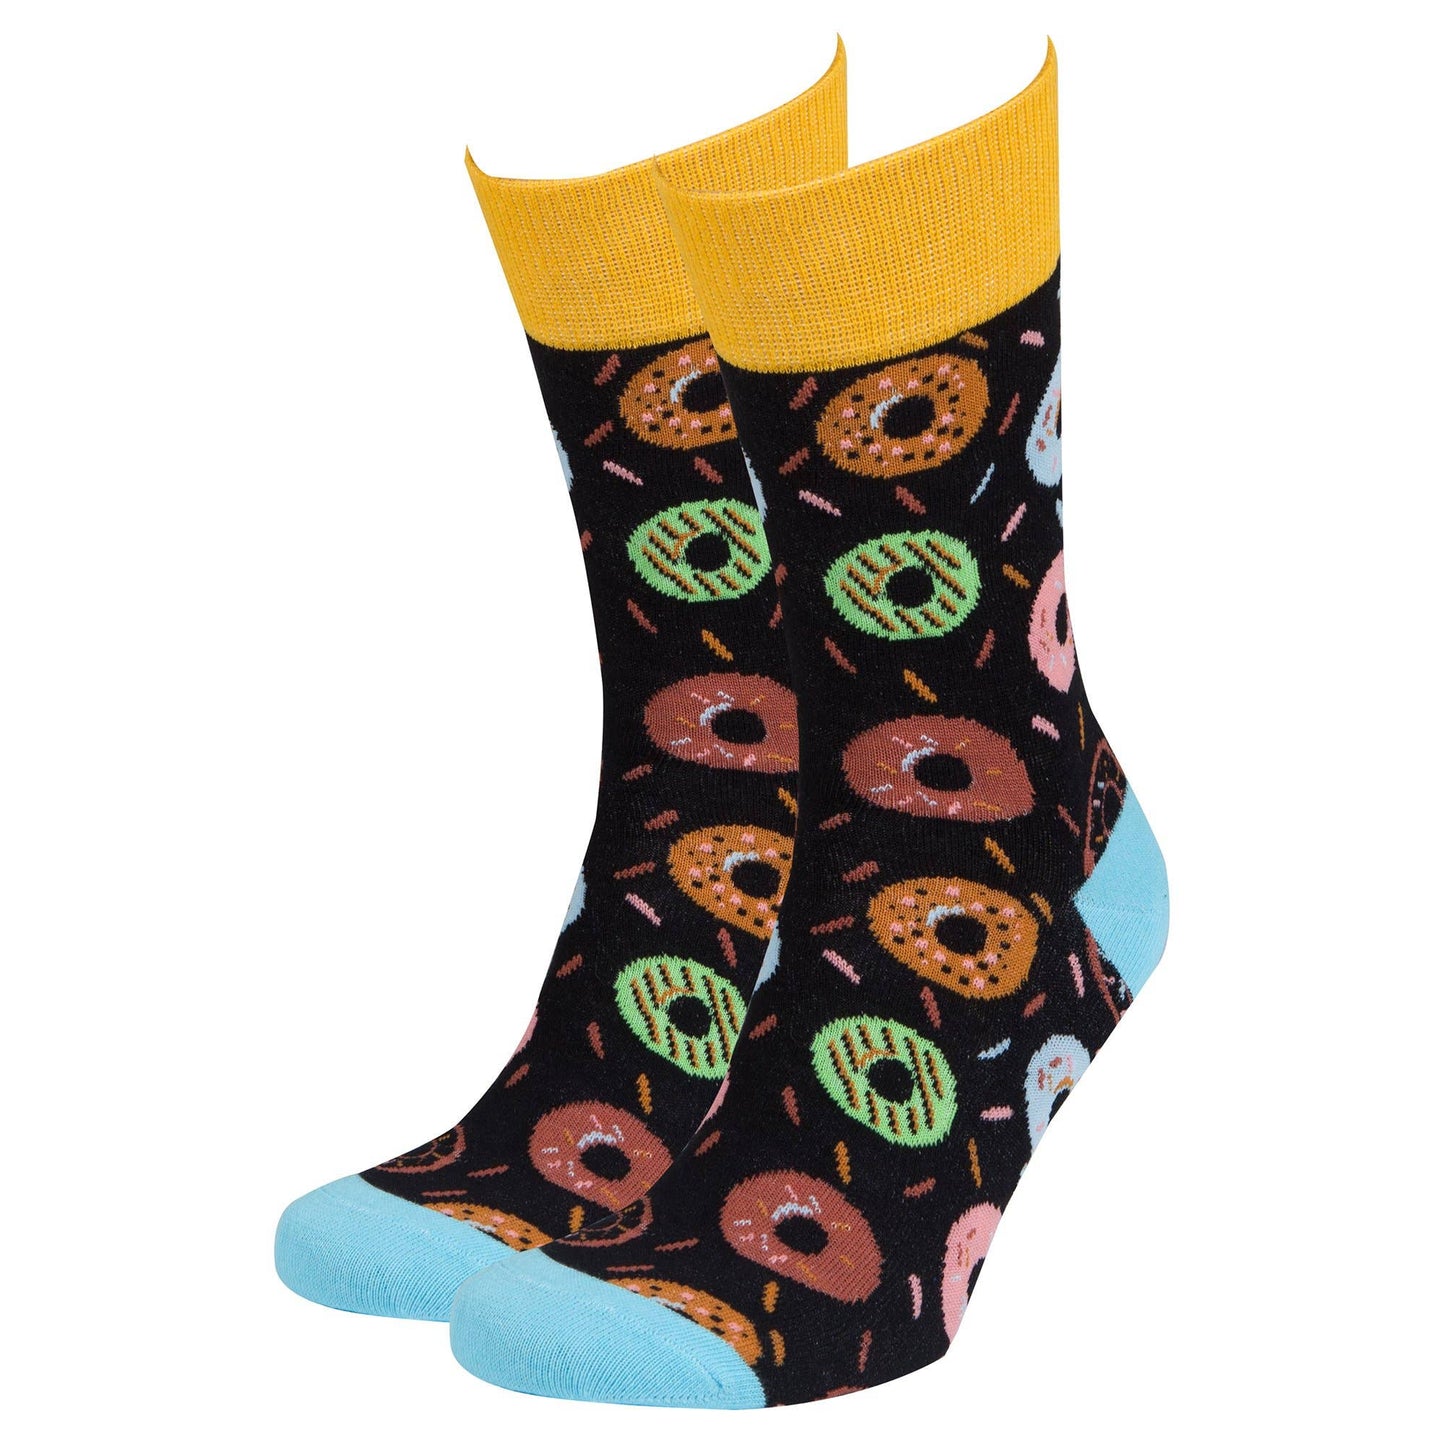 Men's Donut Crew Socks